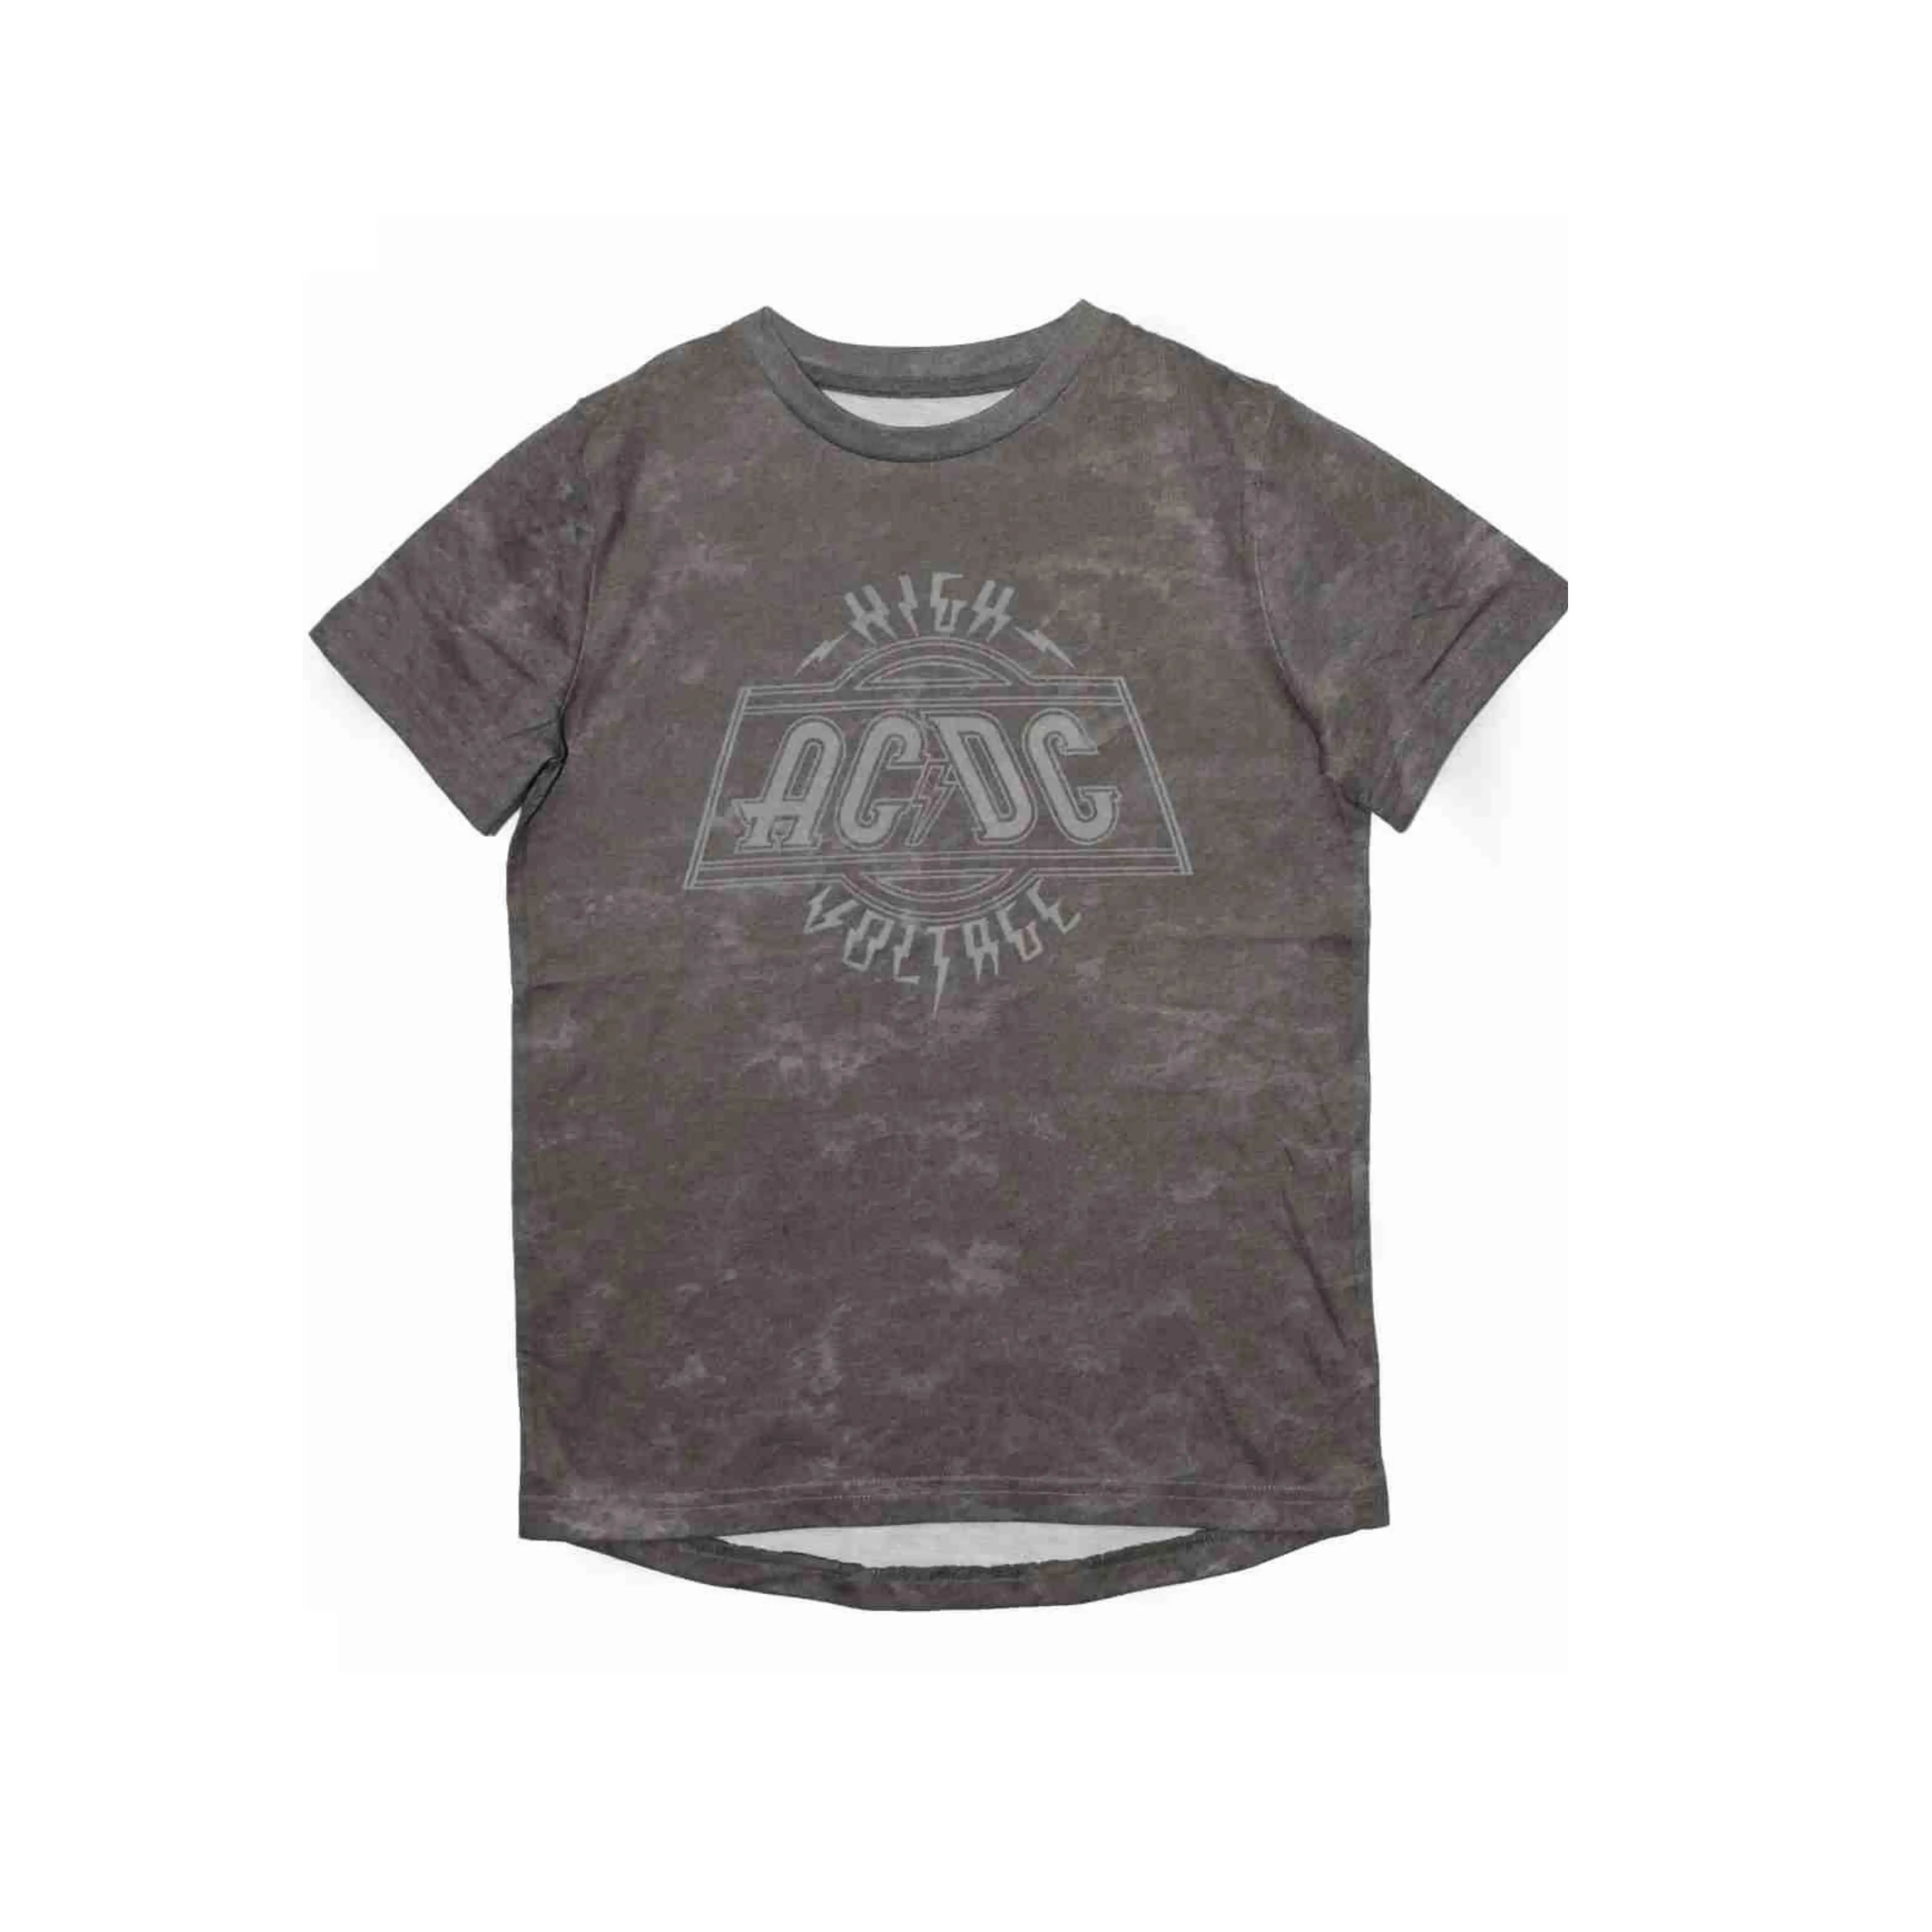 गर्मियों के लिए शुद्ध कॉटन लड़कों की शर्ट के साथ सबसे अधिक बिकने वाली 160 जीएसएम, आधी आस्तीन वाली शर्ट किफायती मूल्य पर उपलब्ध है